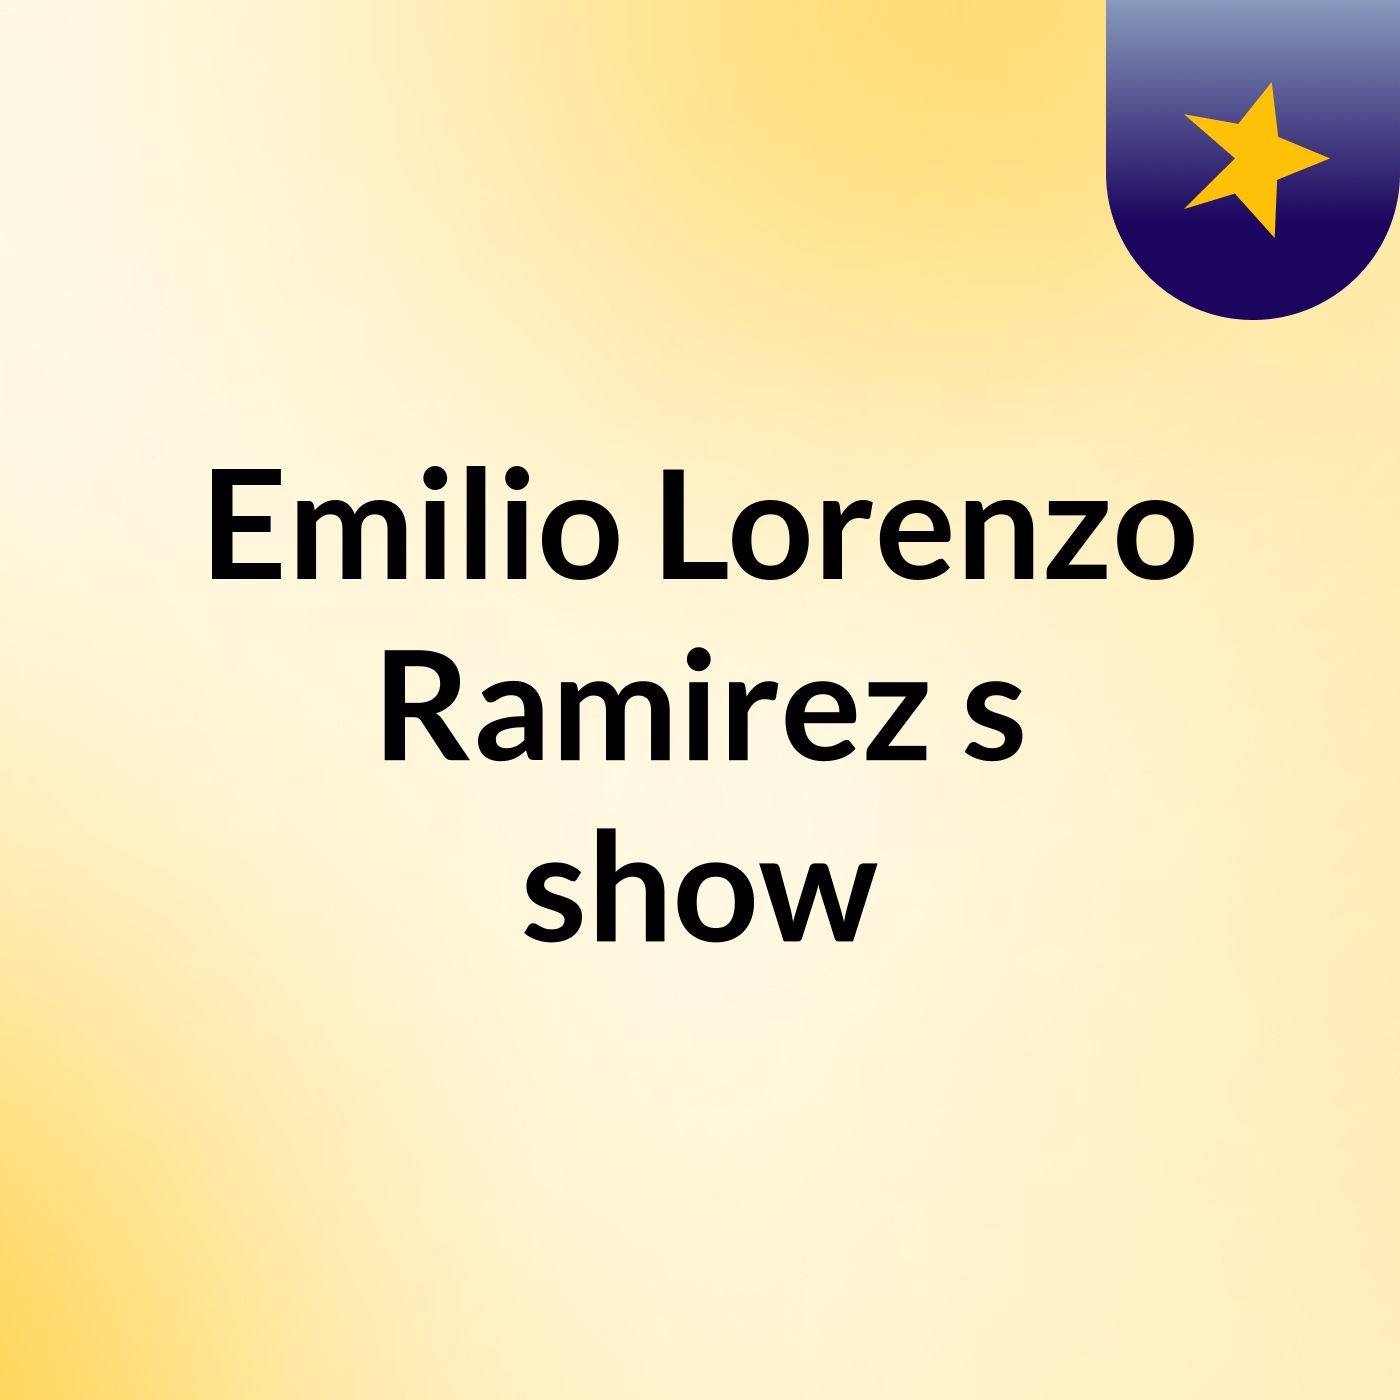 Emilio Lorenzo Ramirez's show